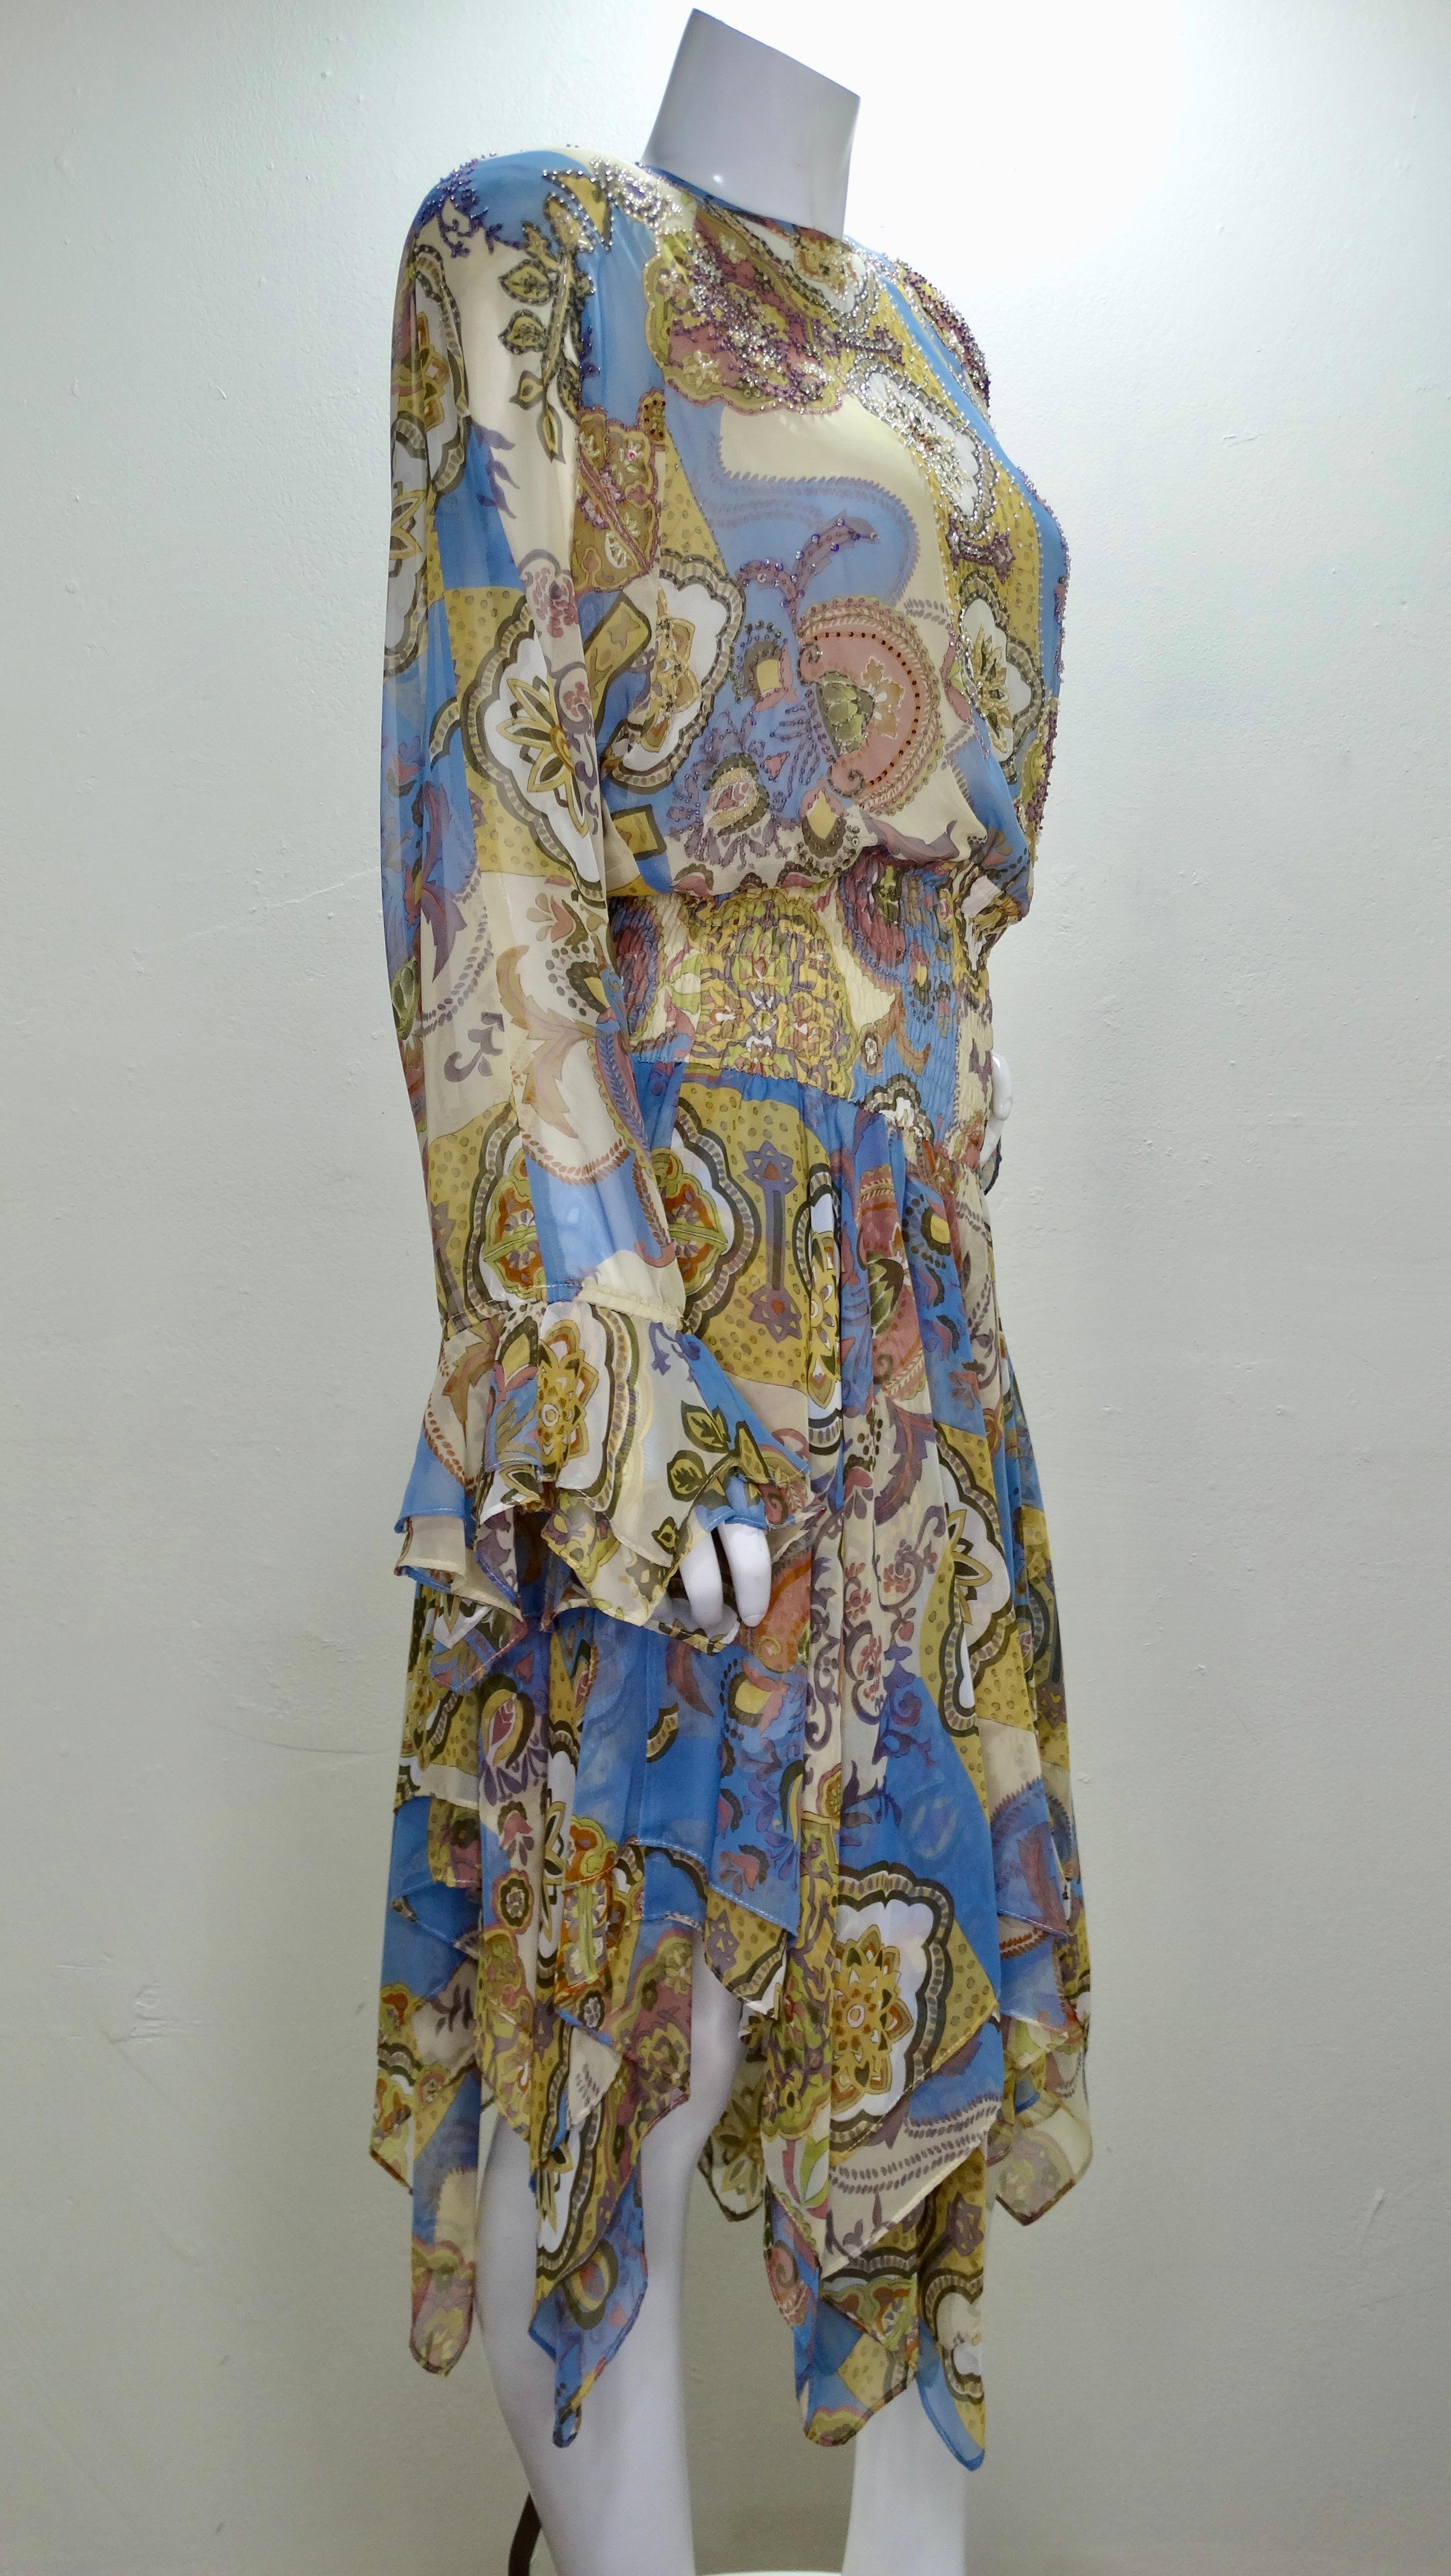 Que les collectionneurs de Diane Freis se réjouissent ! Cette étonnante robe Diane Freis des années 1980 est imprimée d'un motif floral multicolore vif et audacieux qui rappelle les tuiles espagnoles et l'art de la mosaïque. Manches longues à